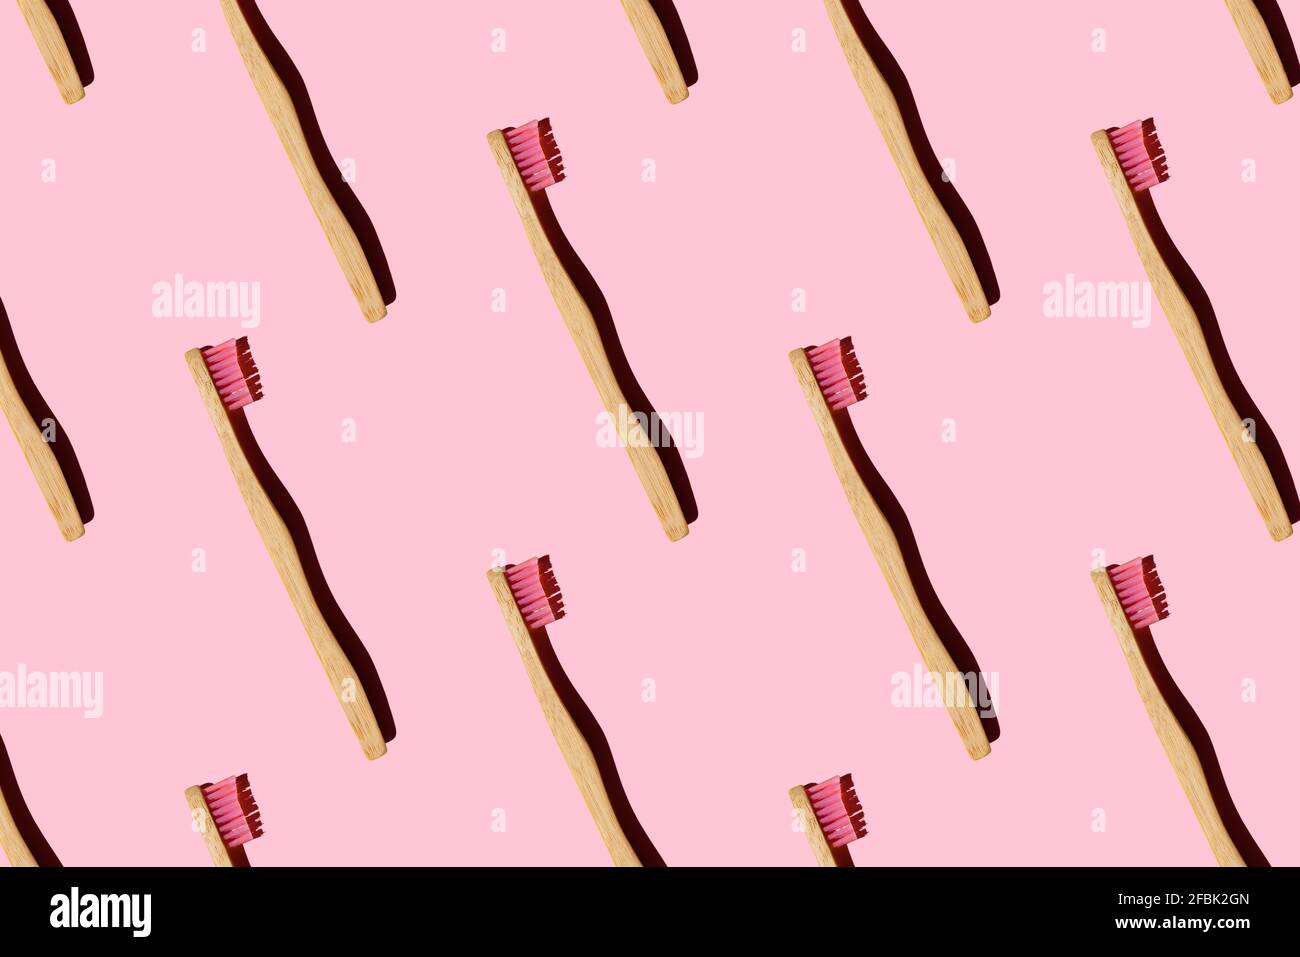 Modello generato digitalmente con spazzolini da denti di bambù su sfondo rosa Foto Stock